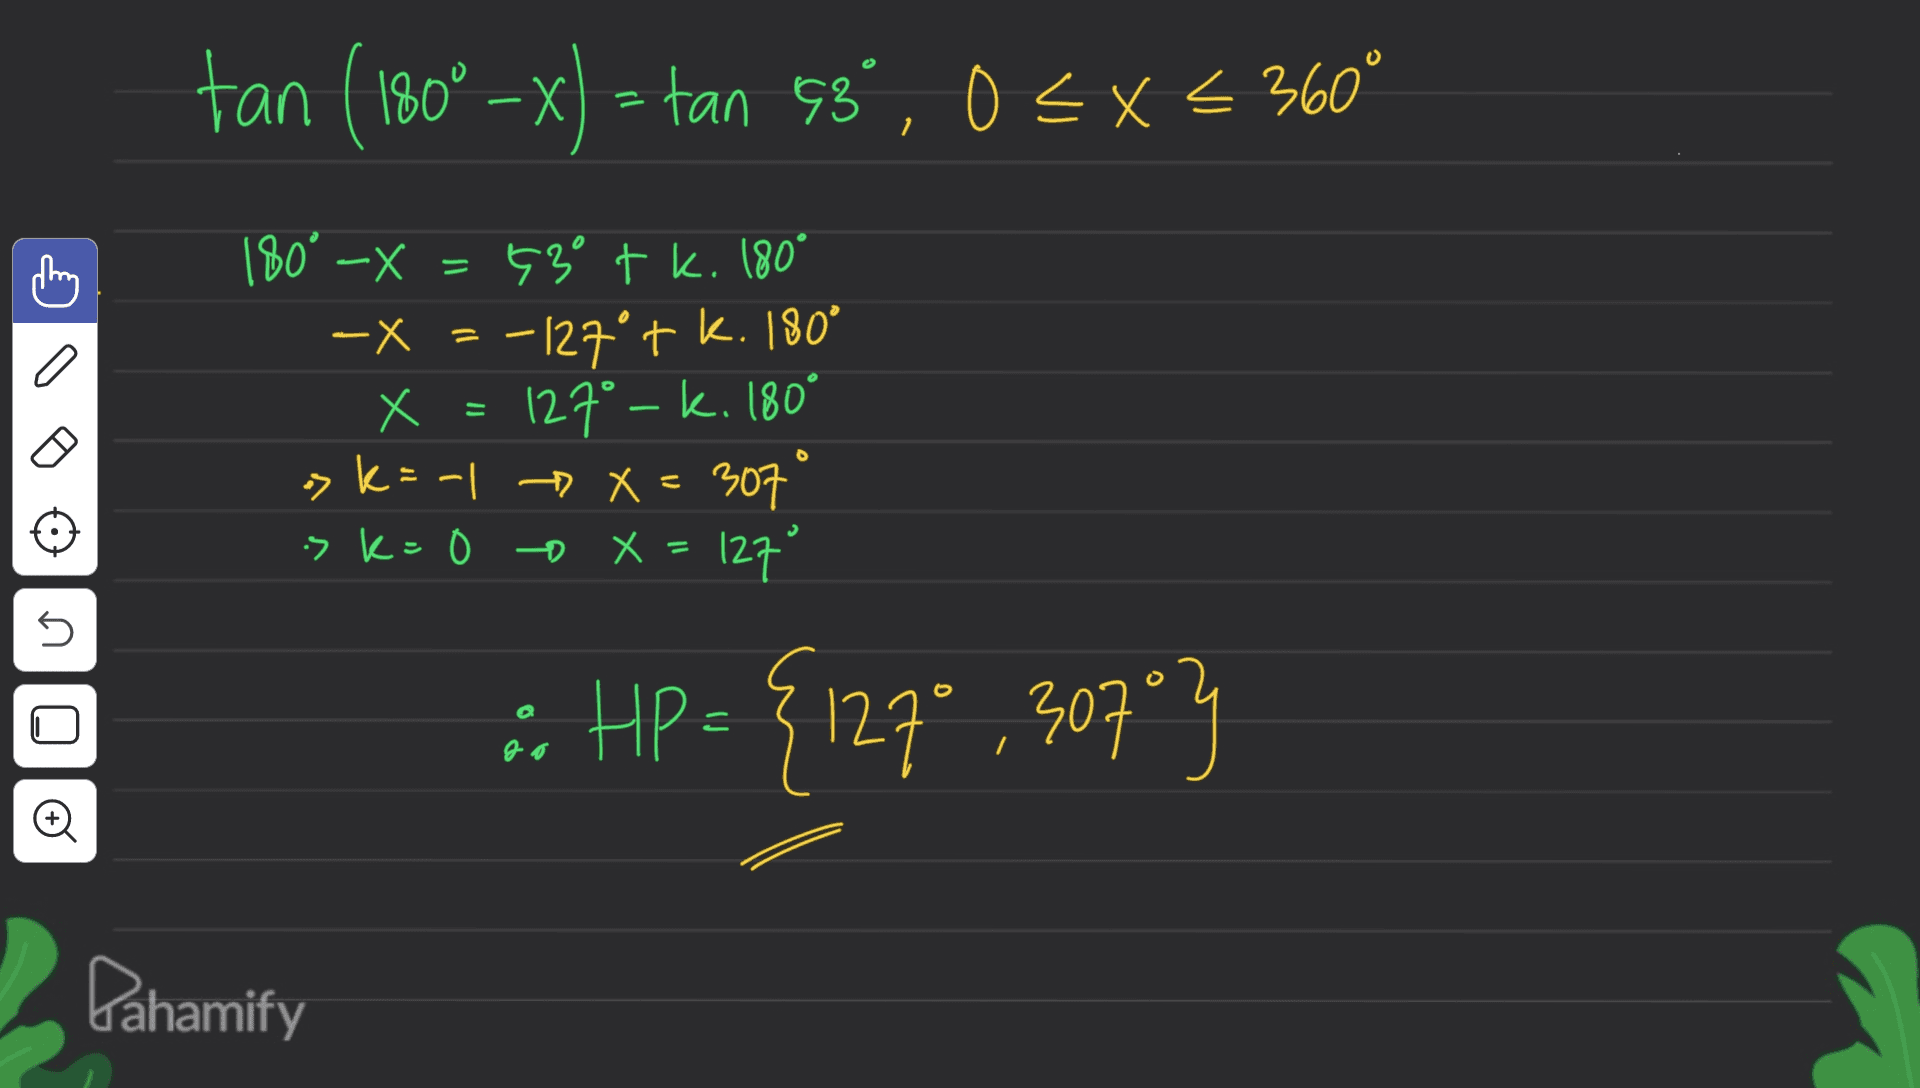 tan (180° -x) = tan 98%, 0<x<360° = o 180° -X 530 + k. 180° -X = -127°+ k. 180° X x = 127º – k. 180° k=-1 X=307 is k=0 o X 127° 5 :: HP = {127 {127* ,307"} go Pahamify 